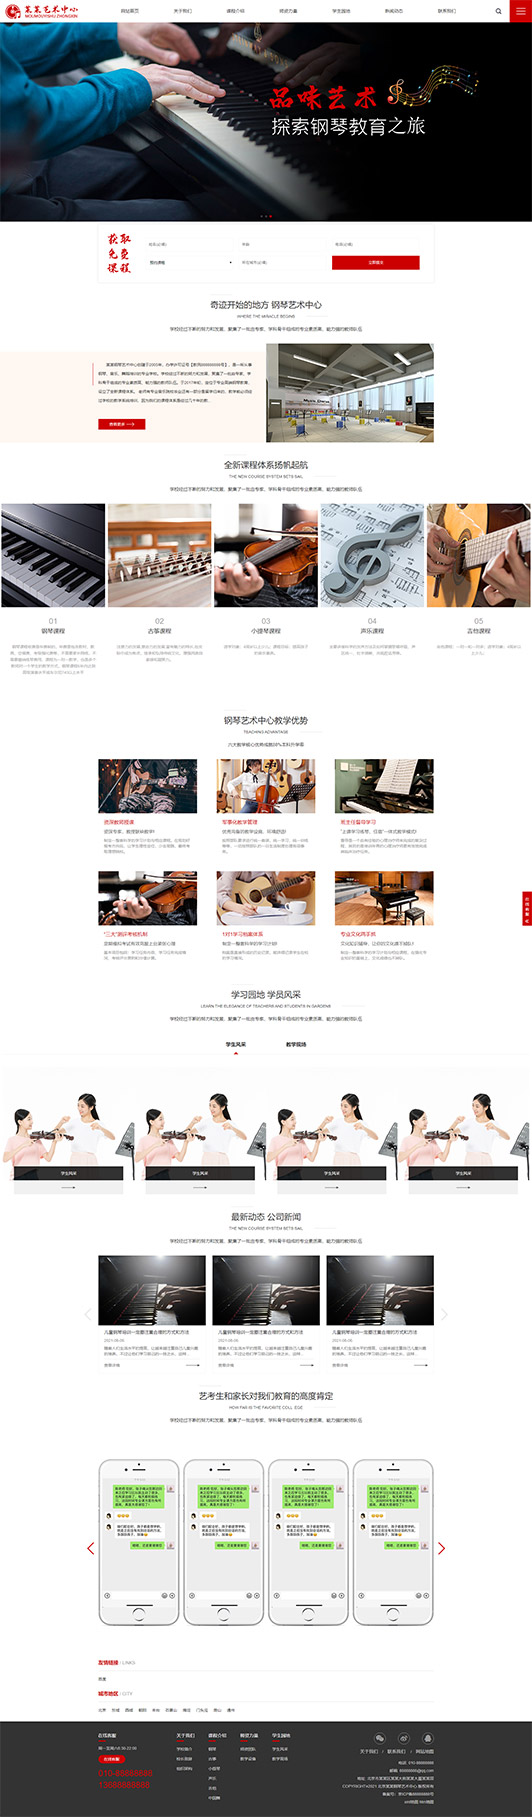 鄂州钢琴艺术培训公司响应式企业网站